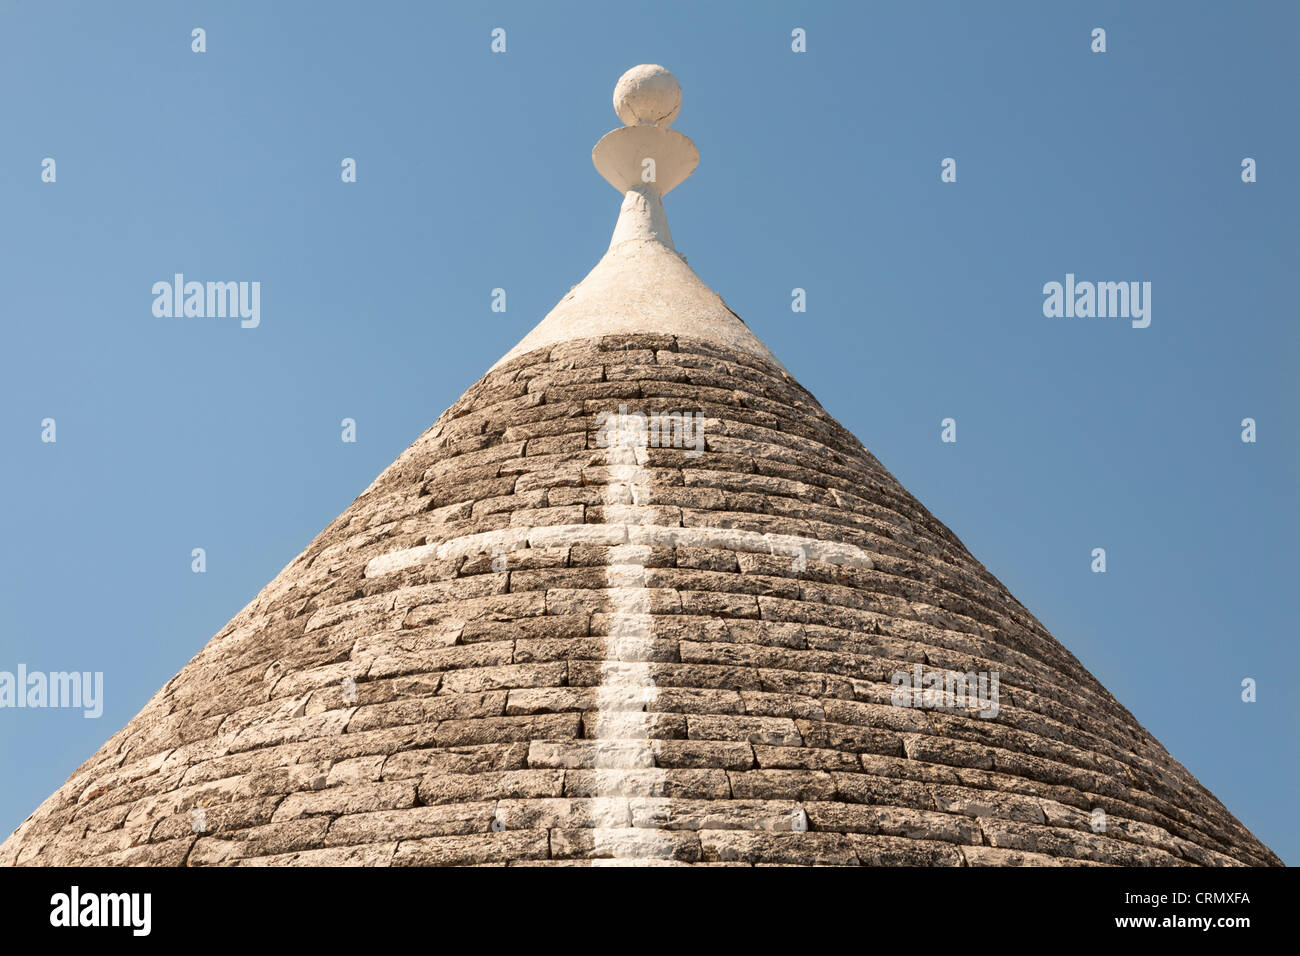 Conica in pietra a secco del tetto della casa di trulli, con croce dipinta simbolo, Alberobello, provincia di Bari, Puglia, Italia Foto Stock